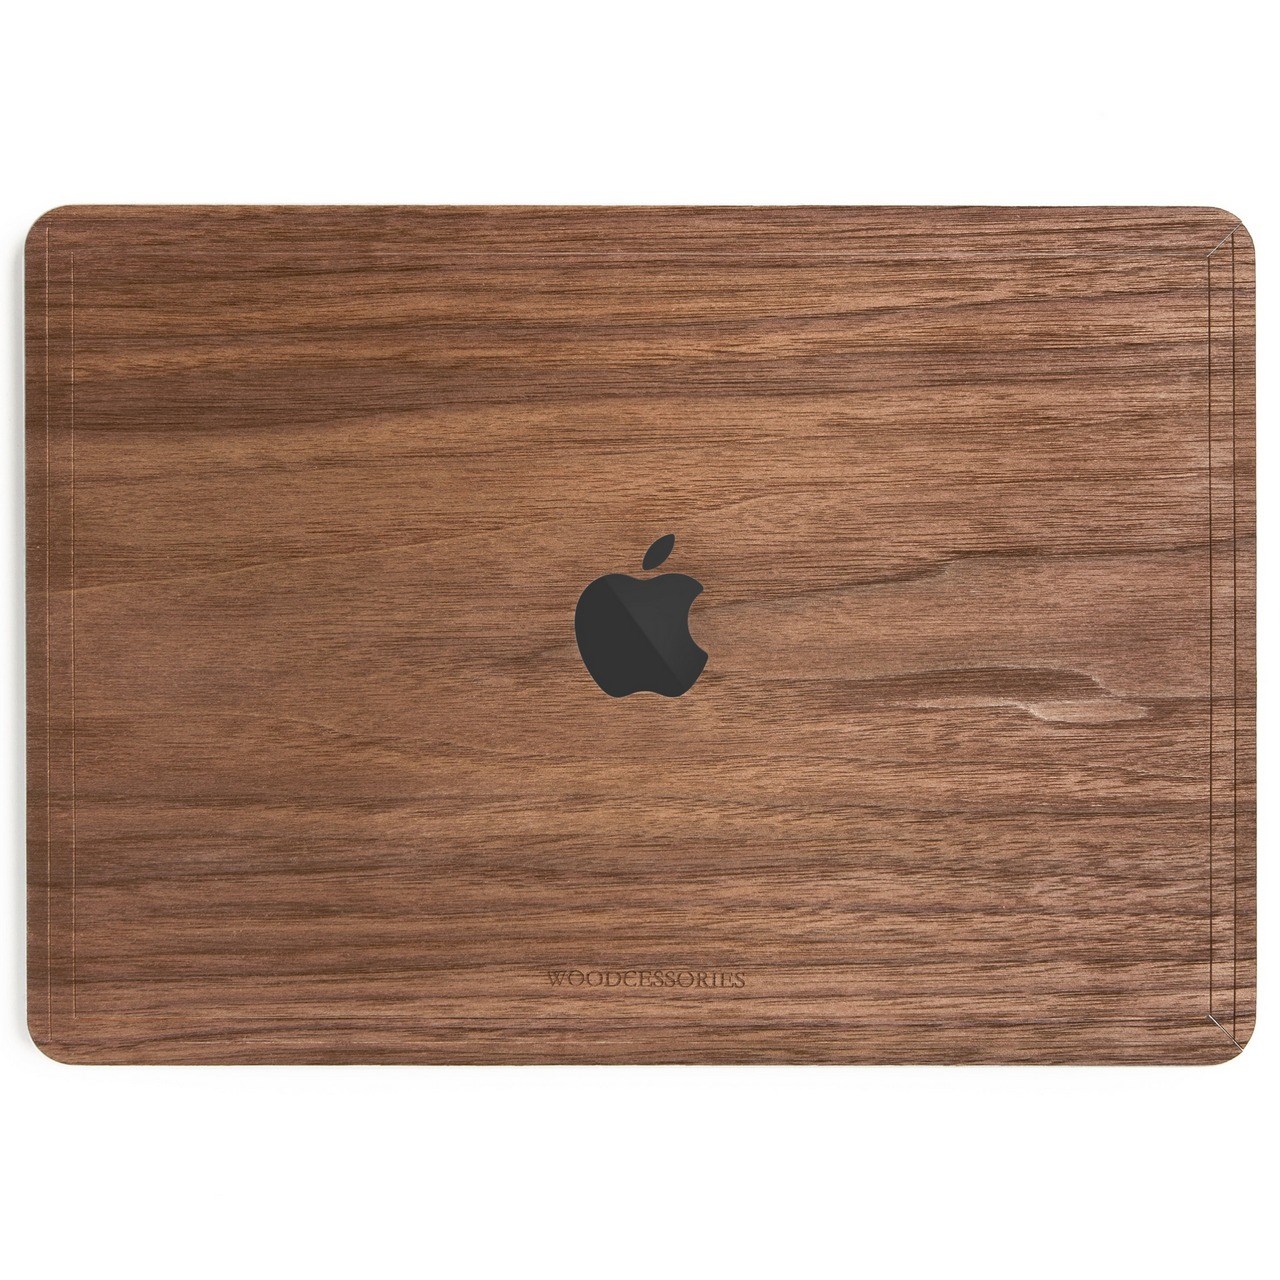 کاور چوبی وودسسوریز مدل Apple Logo مناسب برای مک بوک پرو تاچ بار 15 اینچی 2016